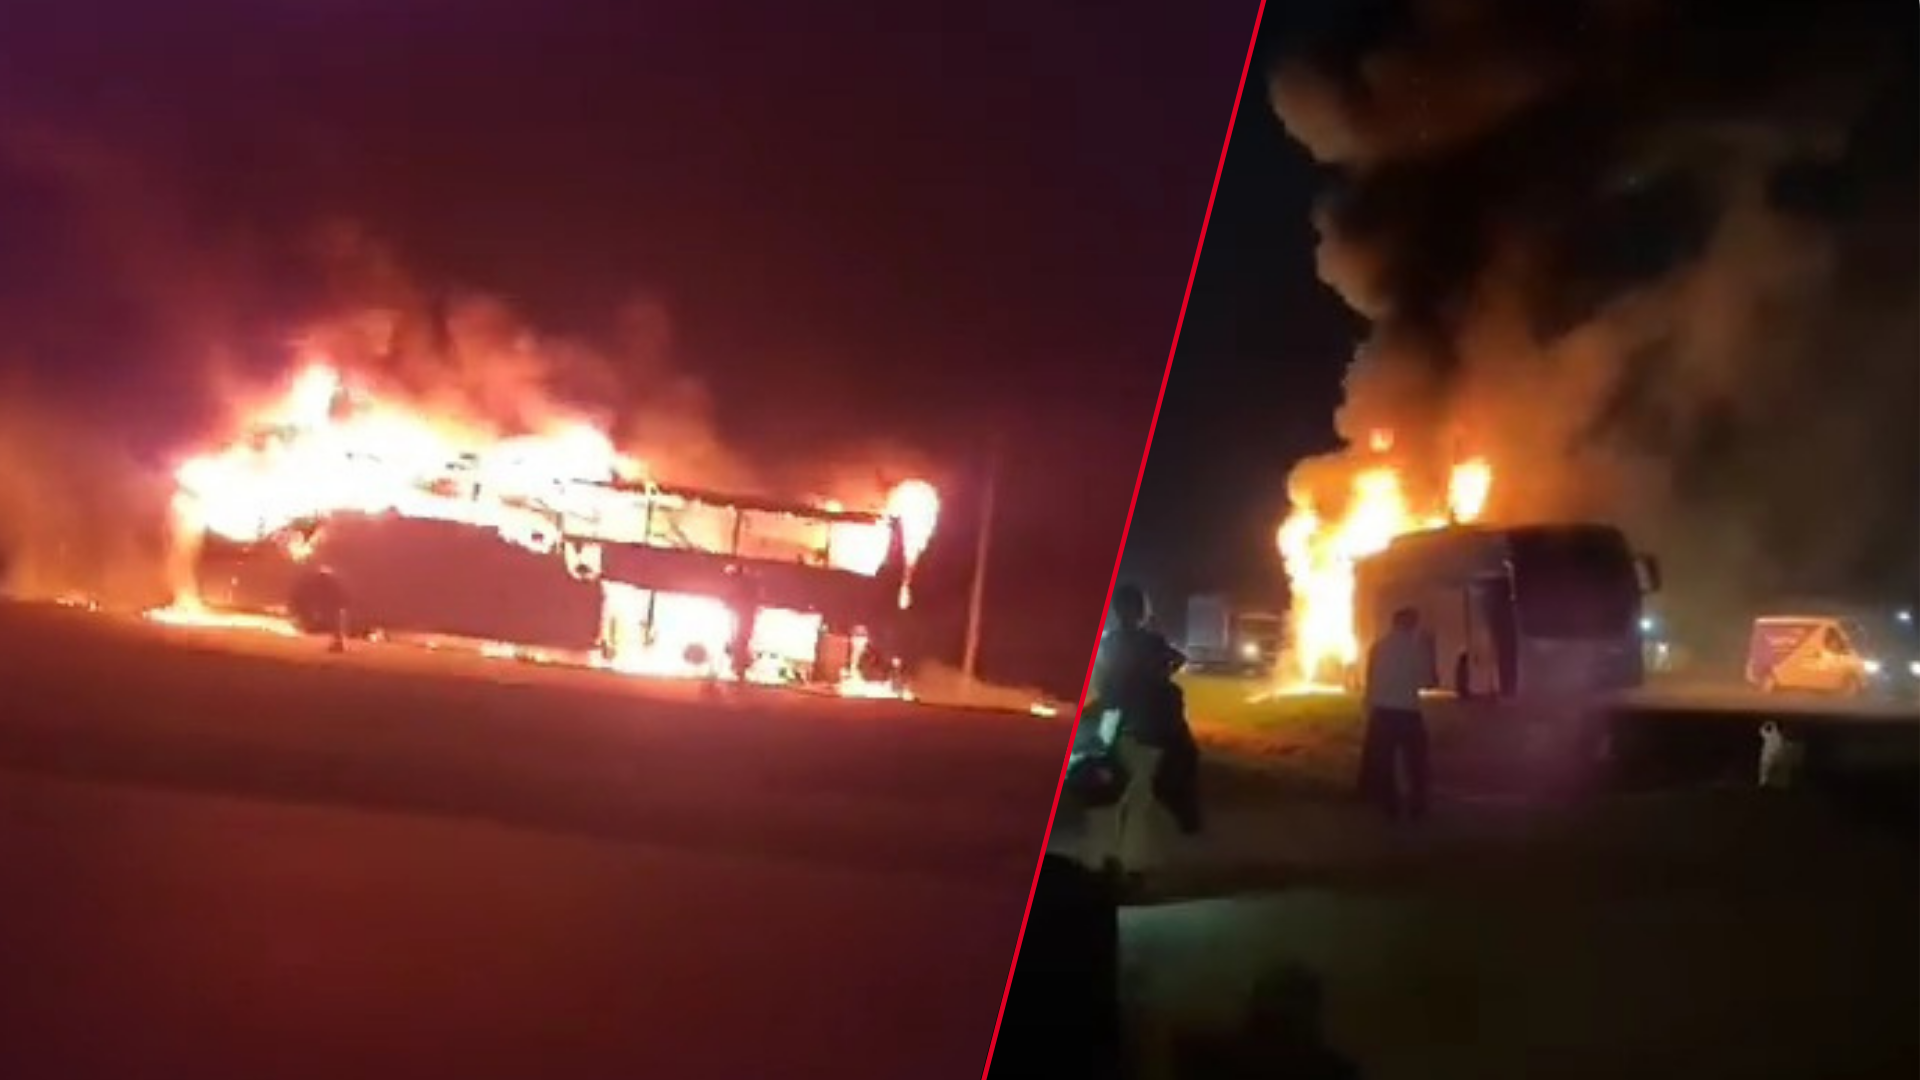 VIDEO | Impresionante incendio de un micro de larga distancia en Ruta 2 km 43